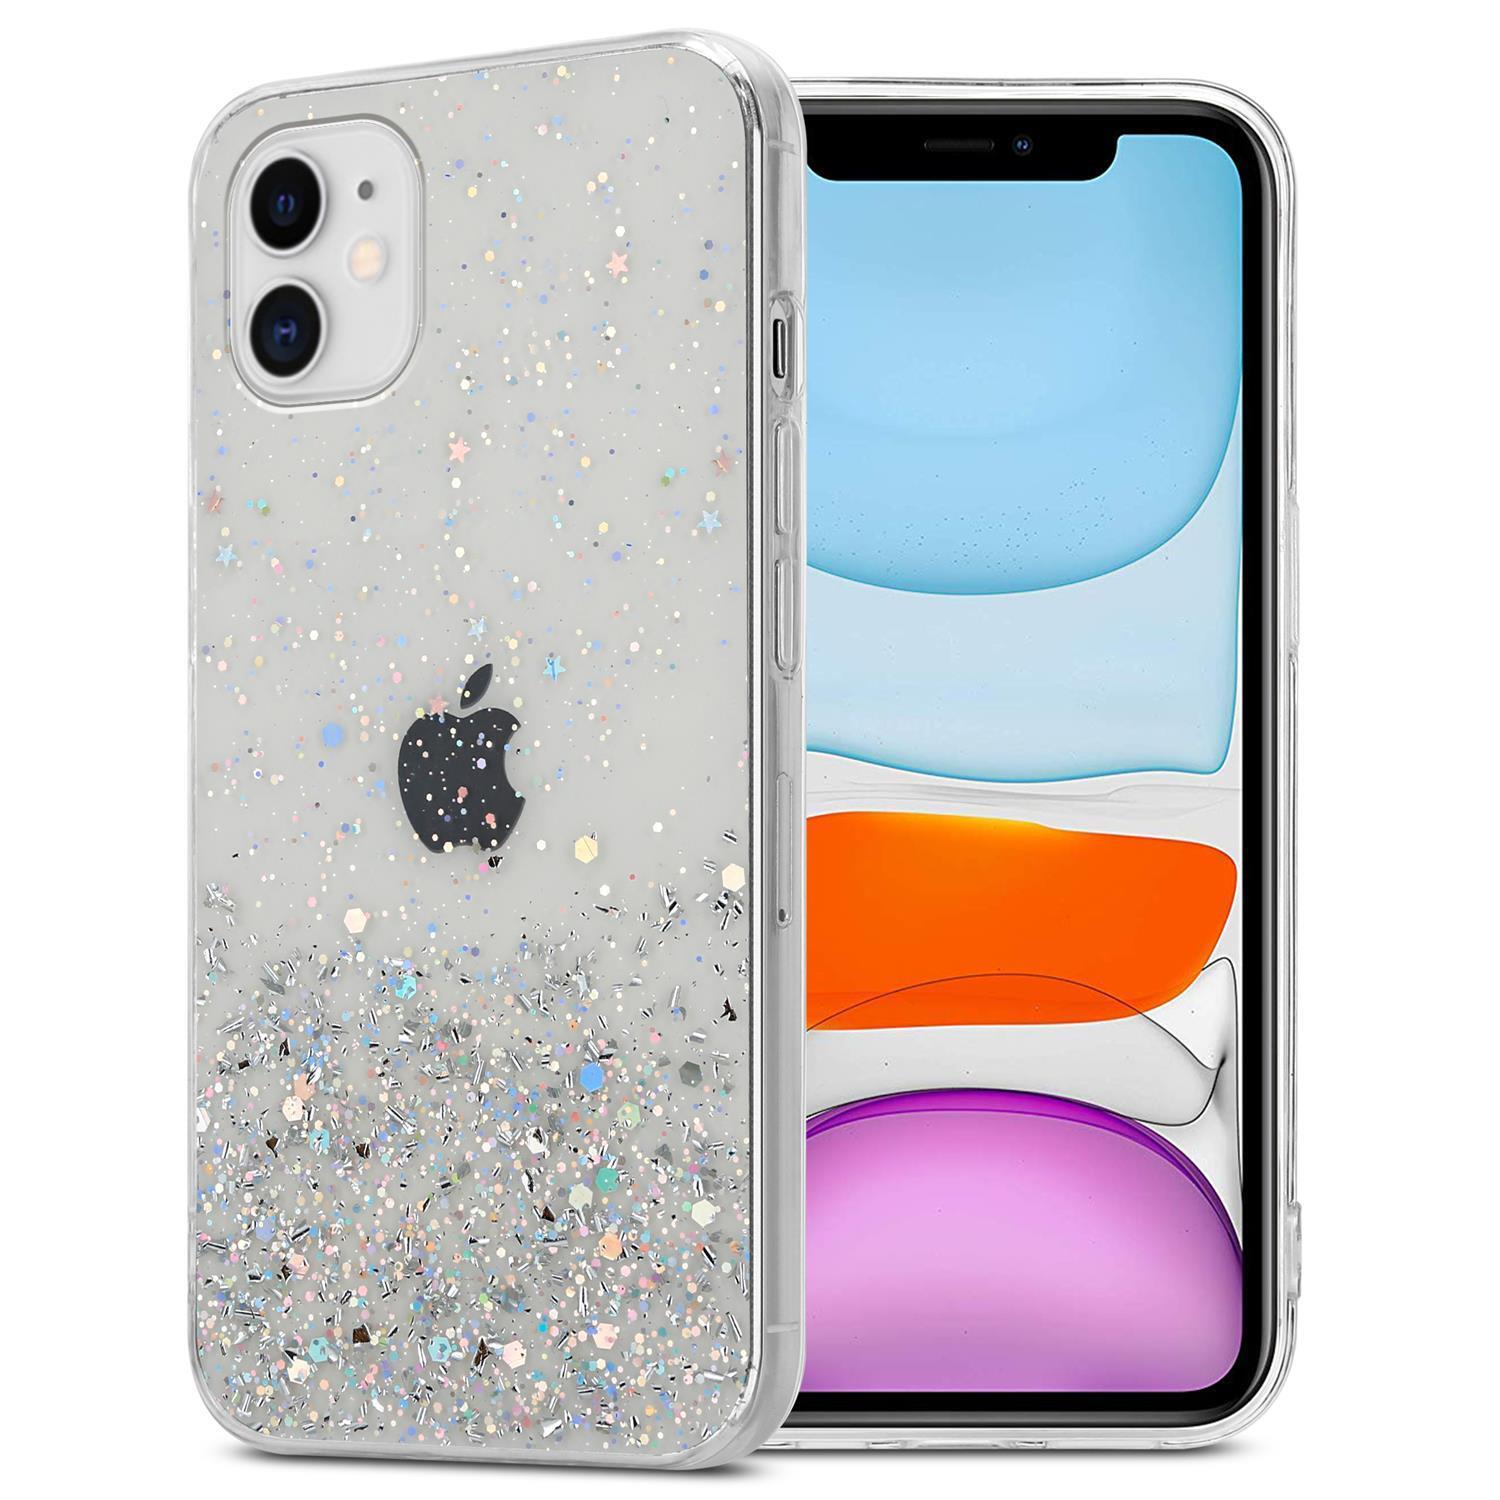 iPhone 11 PRO MAX Silikondeksel Glitter (gjennomsiktig) - Elkjøp